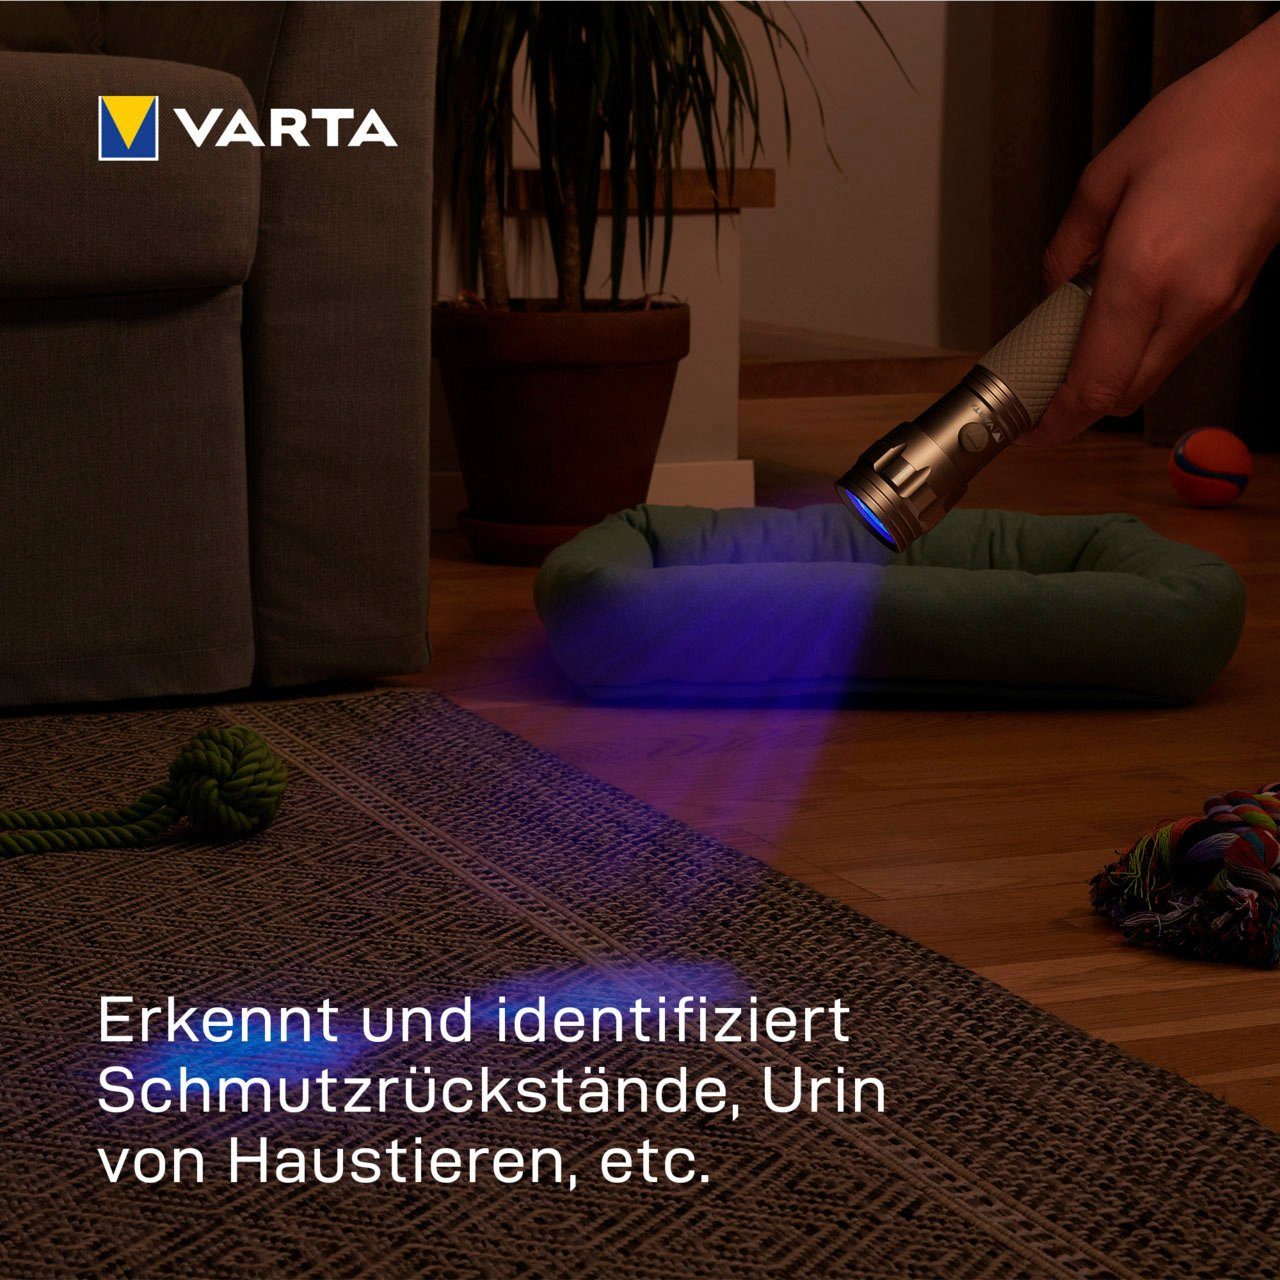 VARTA Taschenlampe UV Licht (Set), Hygienehilfe mit Leuchte Unsichtbares Schwarzlicht sichtbar macht